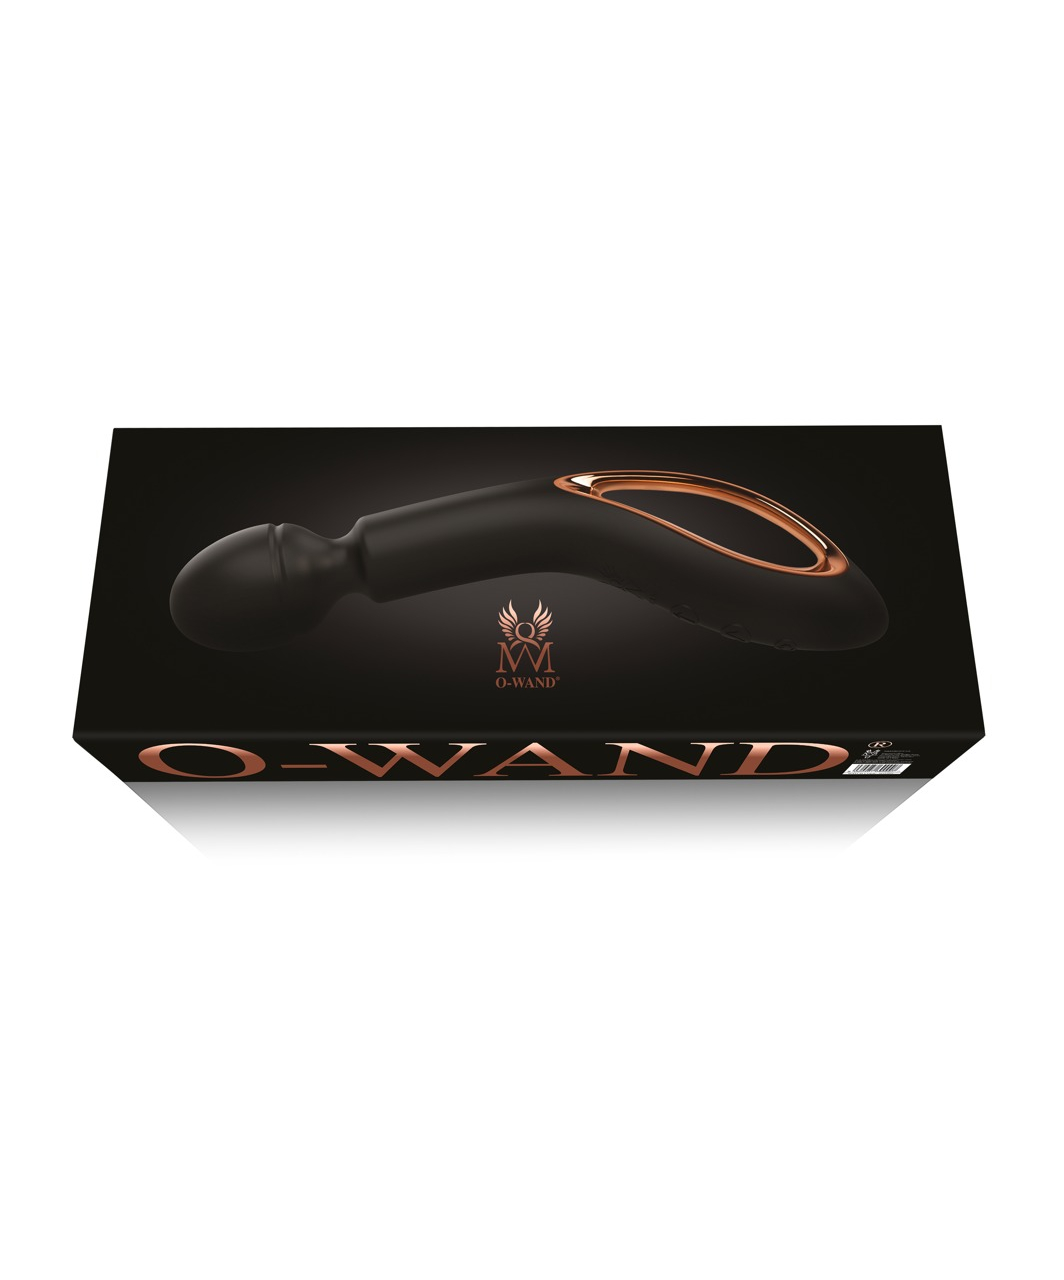 O-Wand lādējama masāžas ierīce